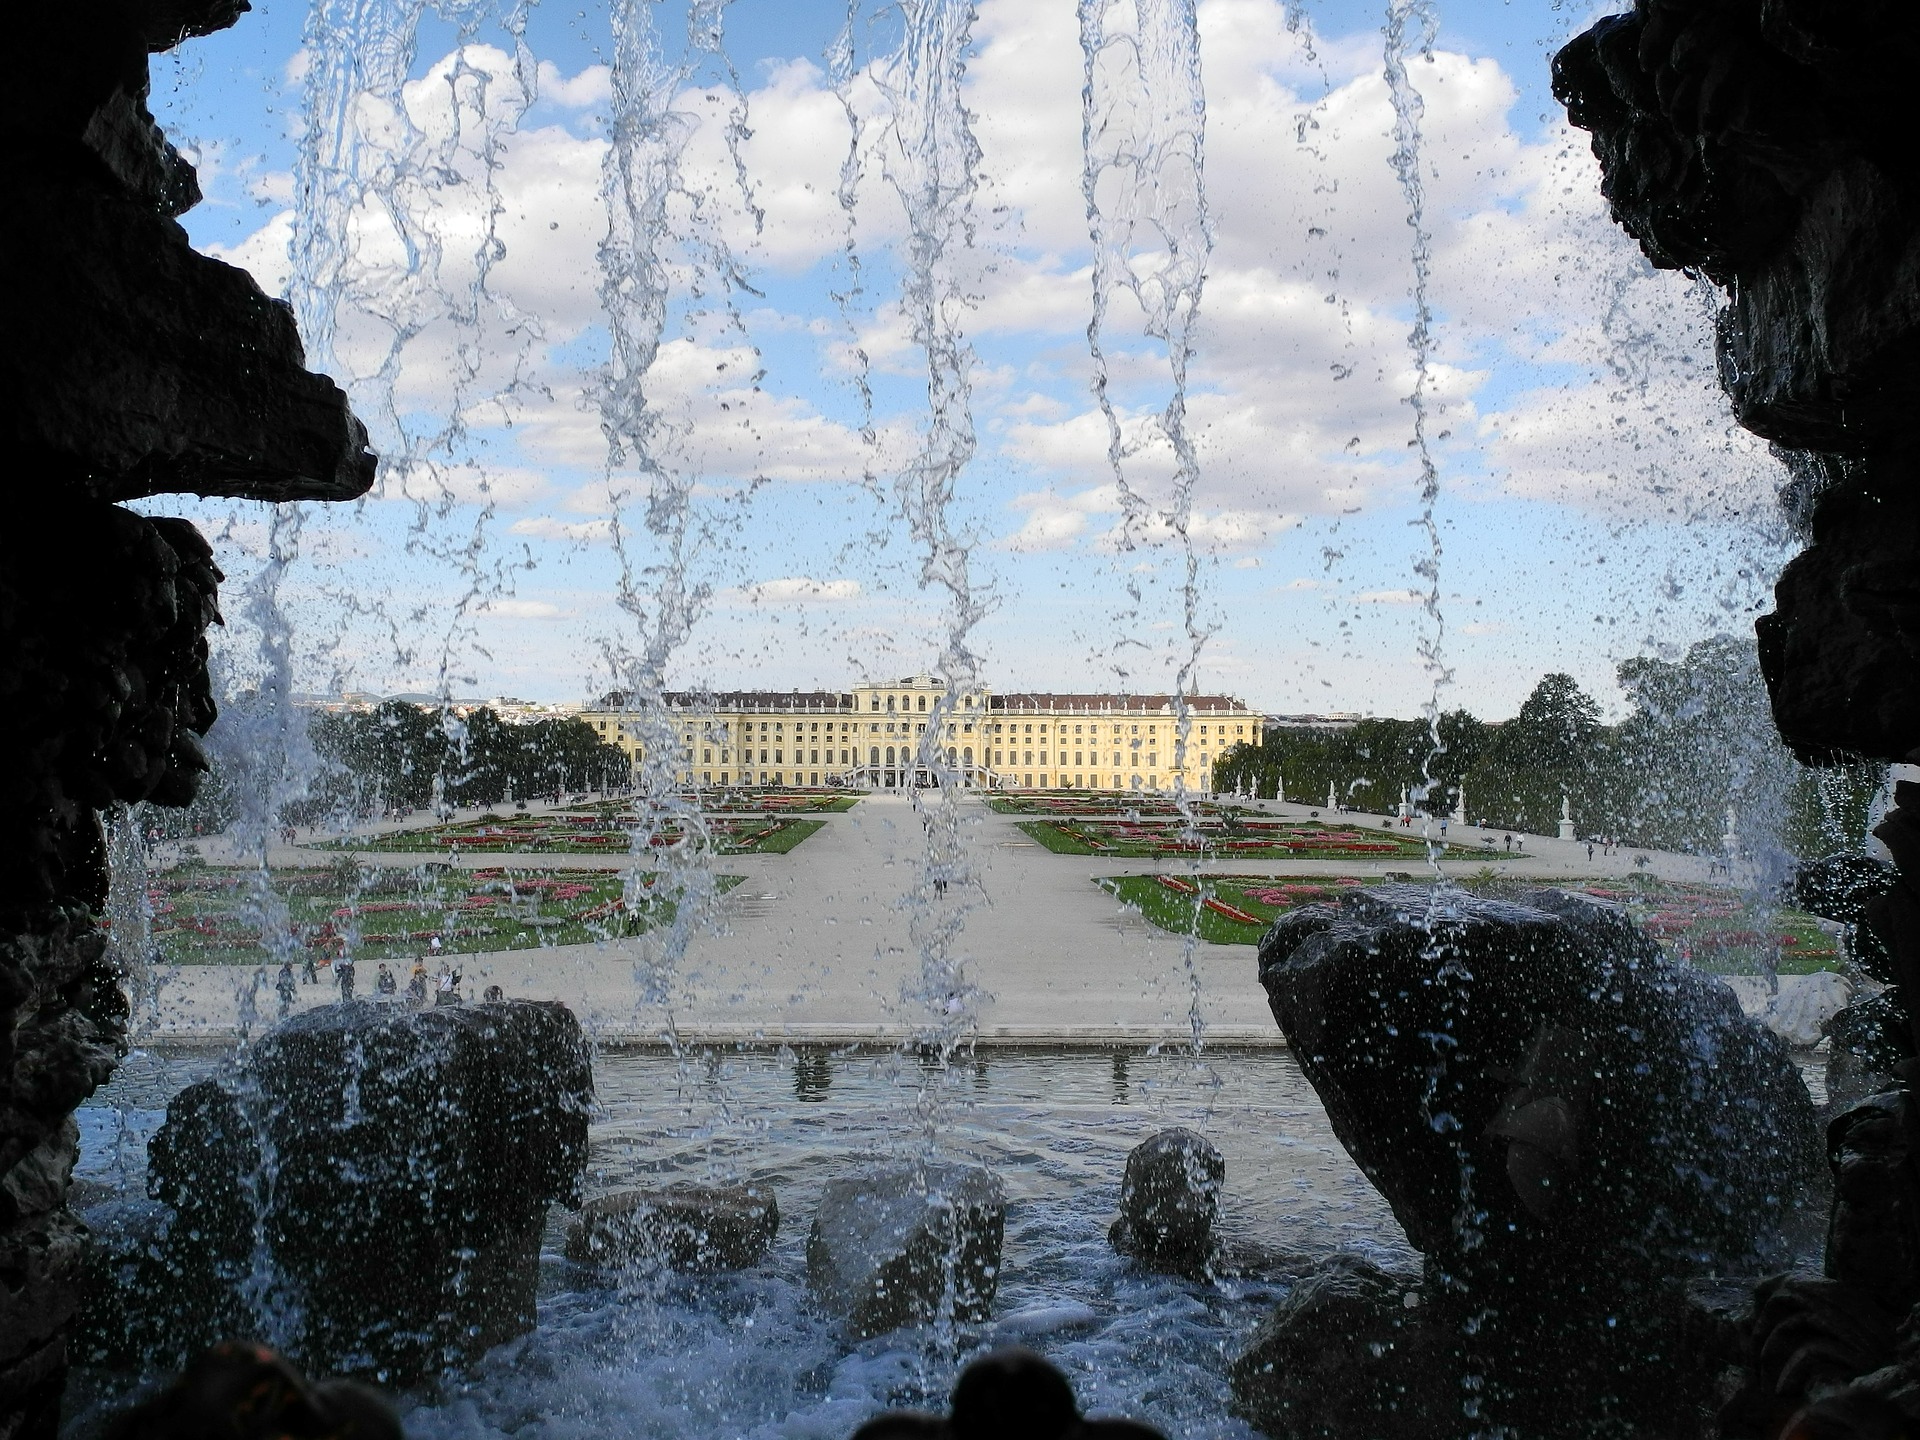 Blick durch das herunterfließende Wasser des Neptunbrunnens auf das Schloss Schönbrunn